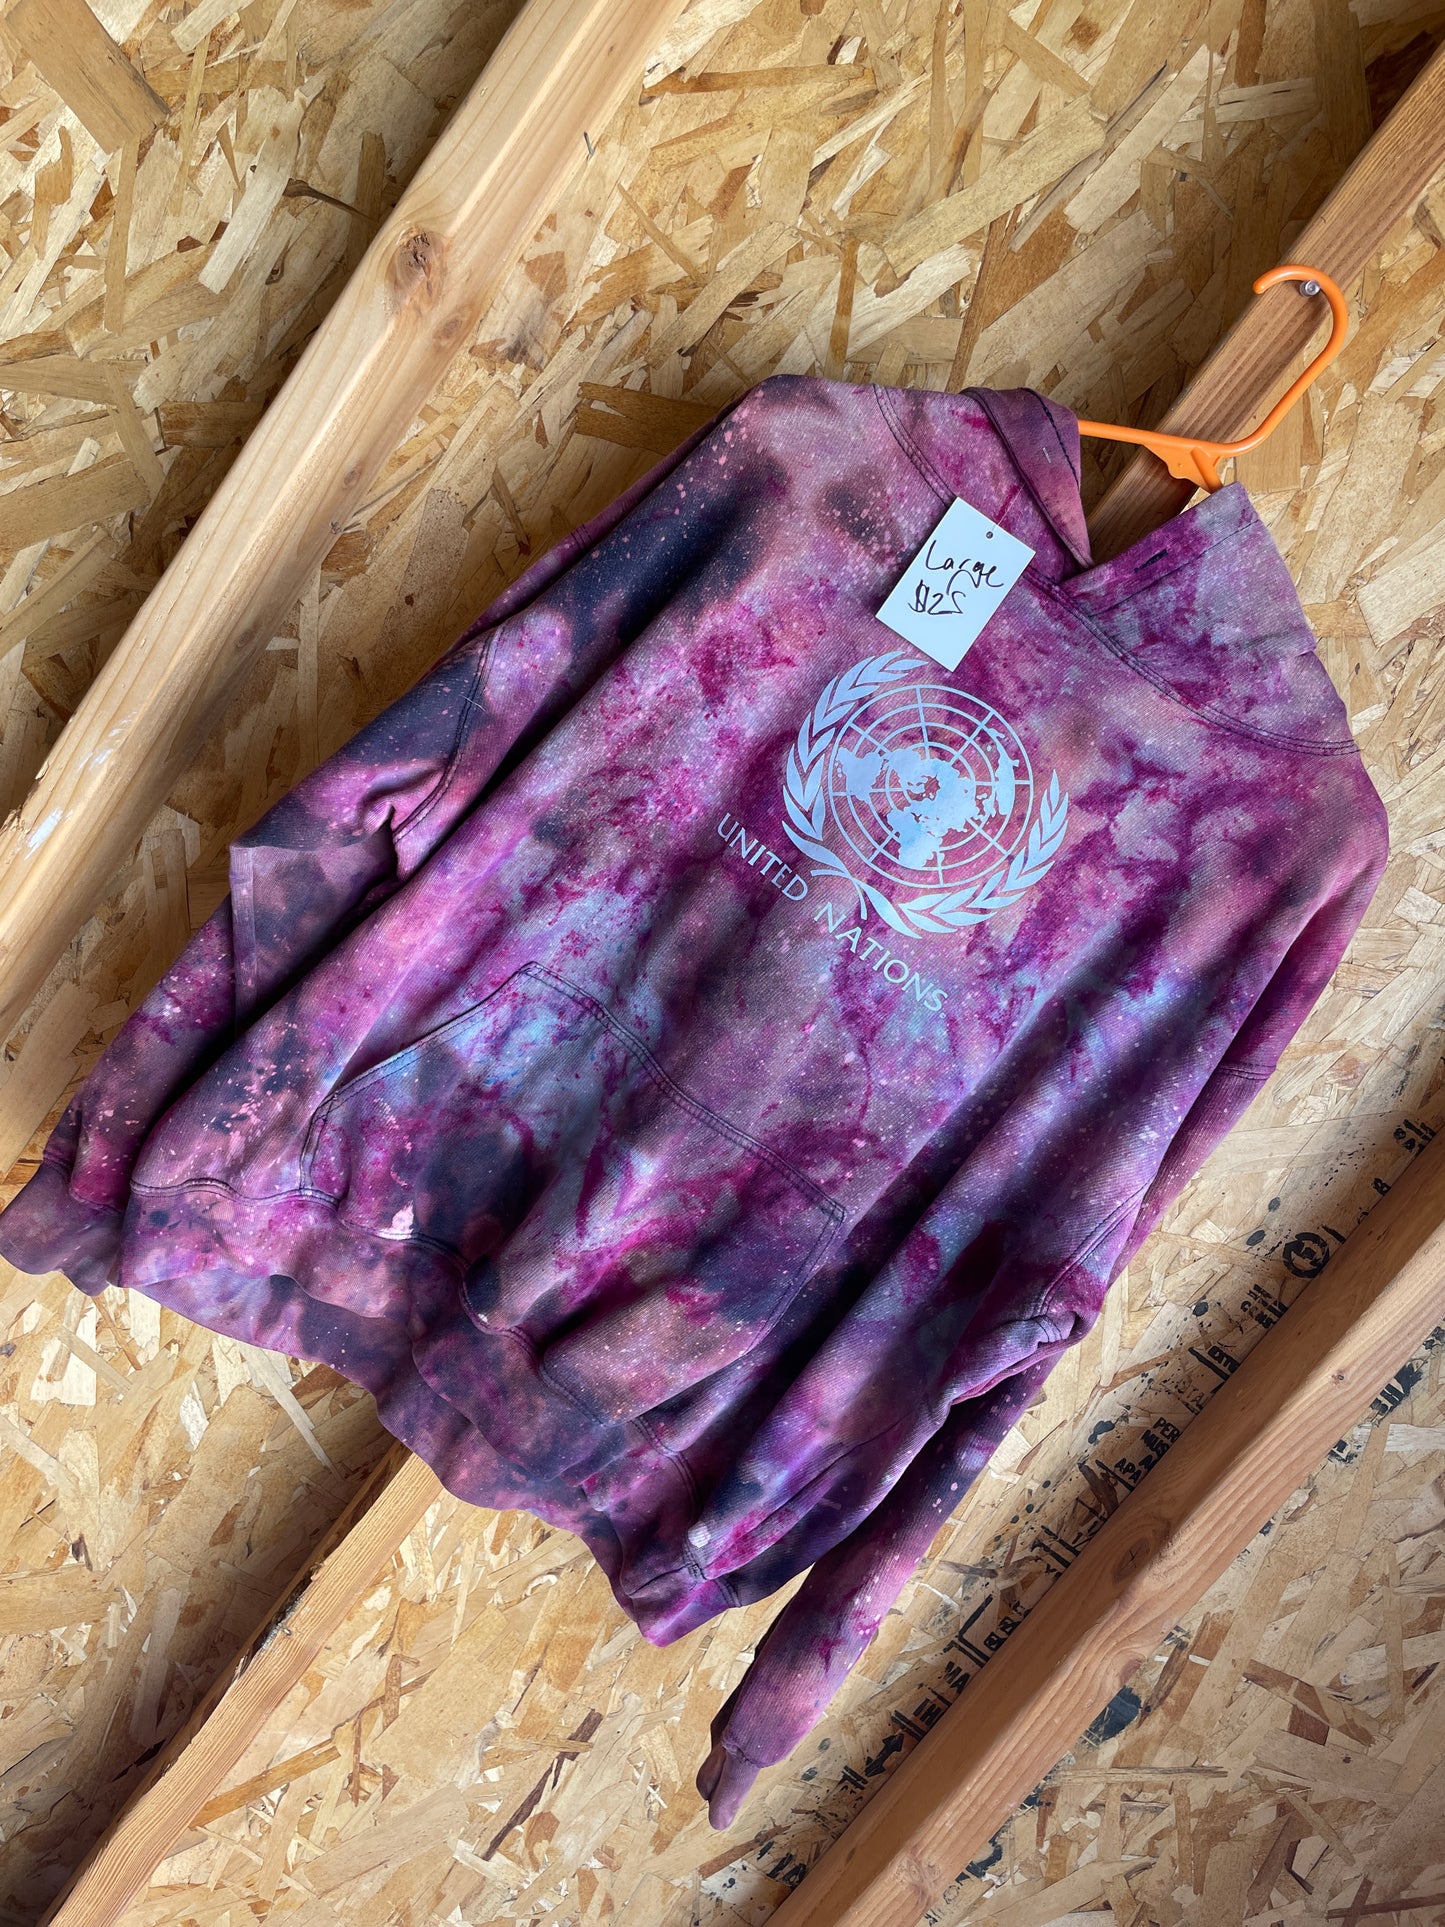 Large Men’s United Nations Handmade Tie Dye Hoodie | Black and Pink Galaxy Ice Dye Tie Dye Sweatshirt